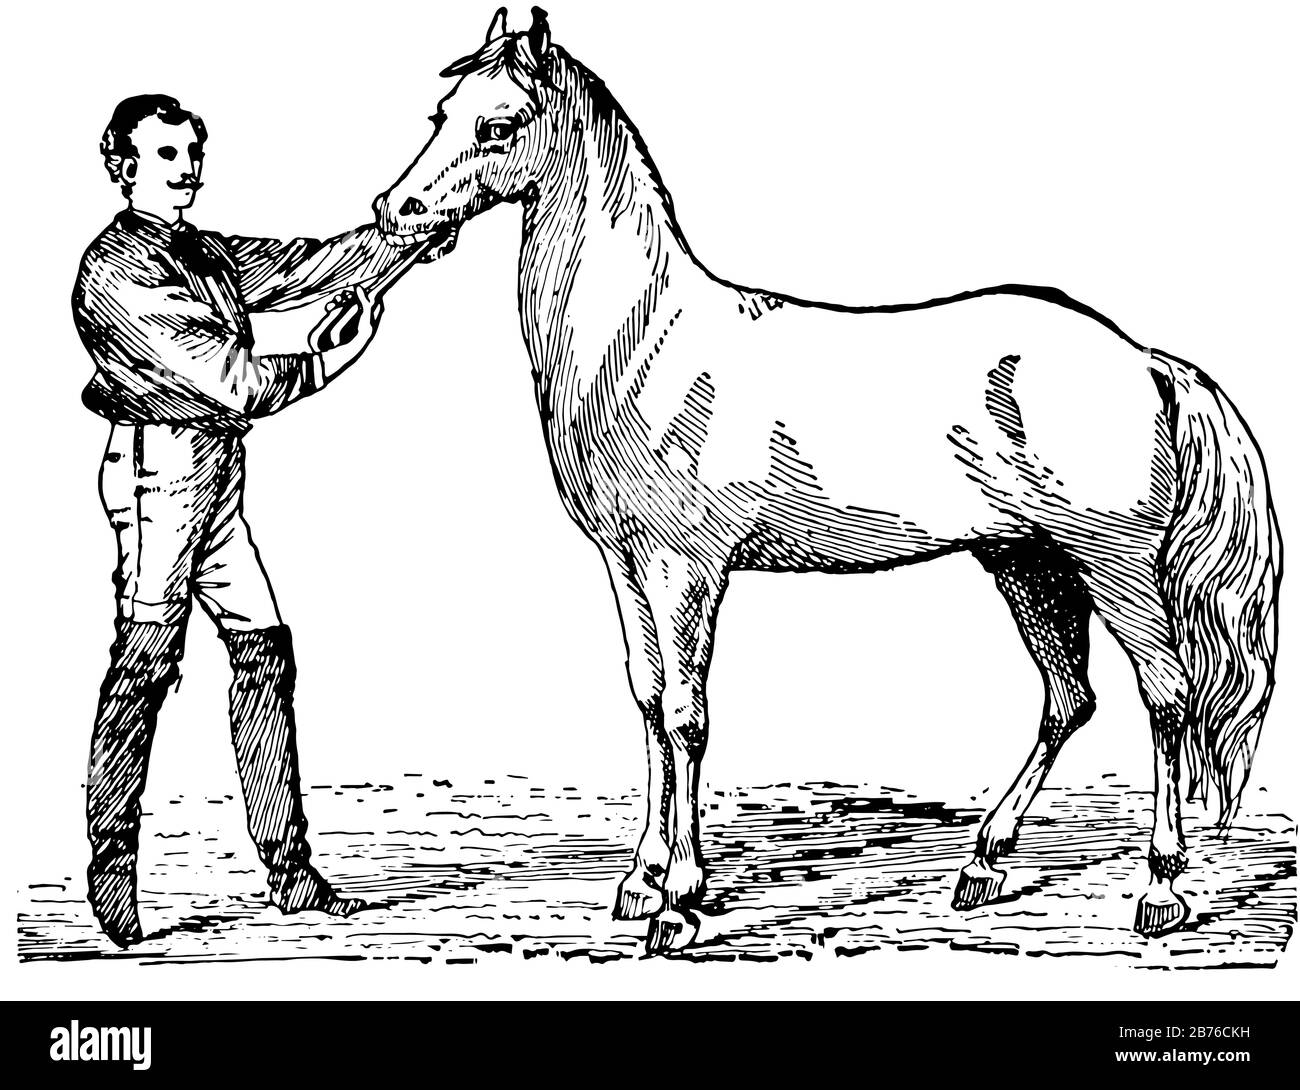 Questa illustrazione rappresenta la cura dei Denti di un cavallo in cui un uomo limando i bordi taglienti dei denti di un cavallo, disegno di linea d'annata o illustrazione di incisione Illustrazione Vettoriale